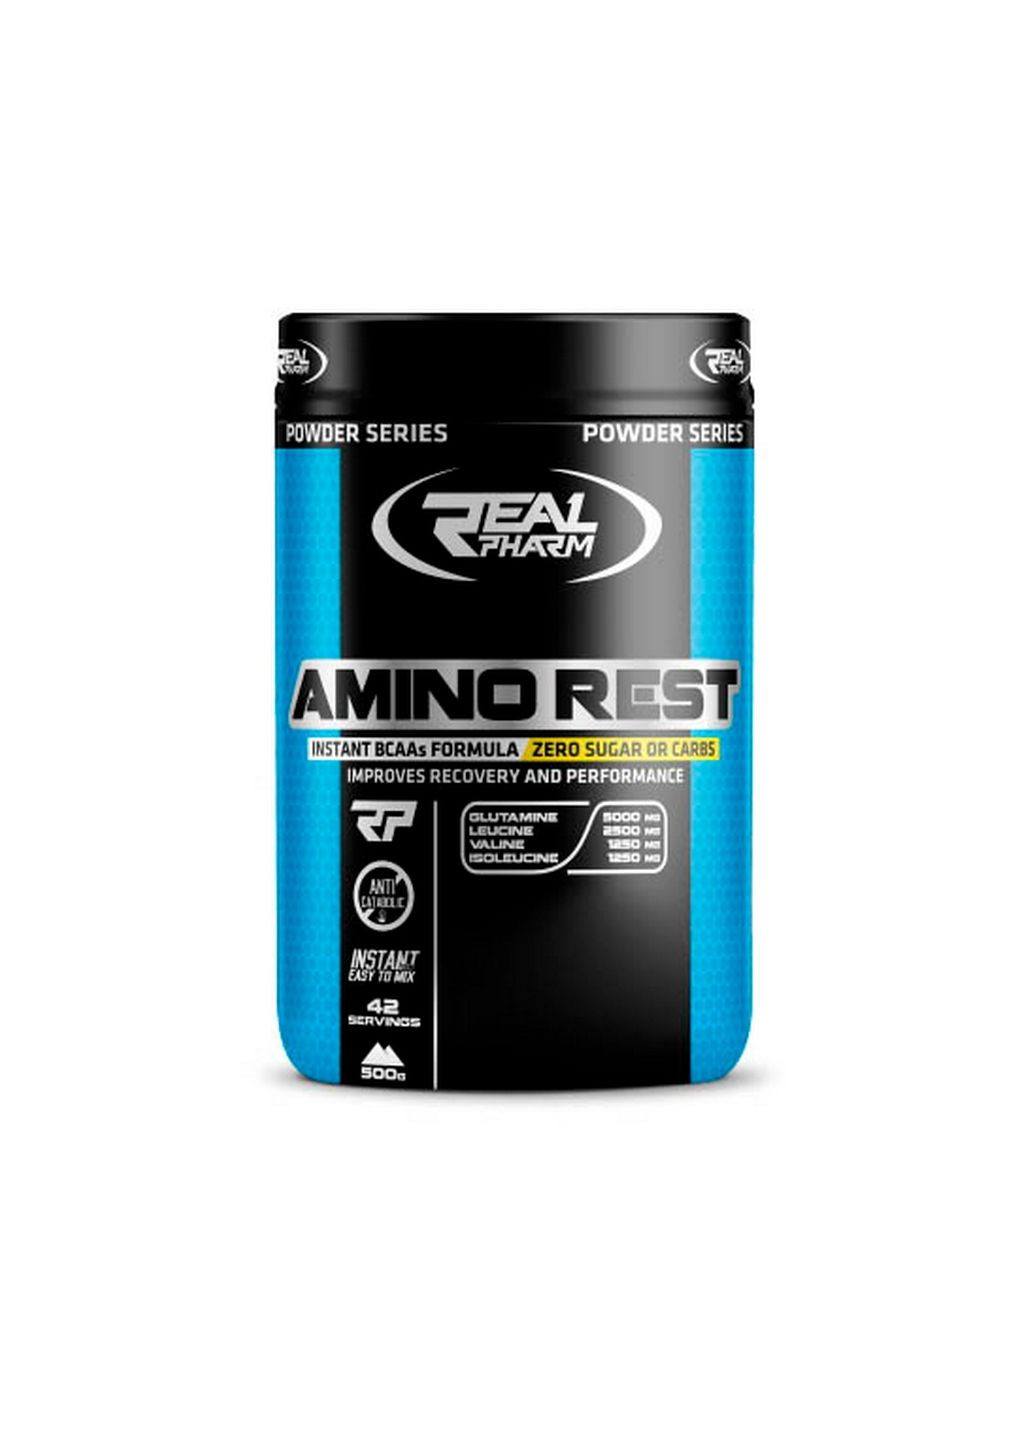 Аминокислота Amino Rest, 500 грамм Апельсин Real Pharm (293477511)